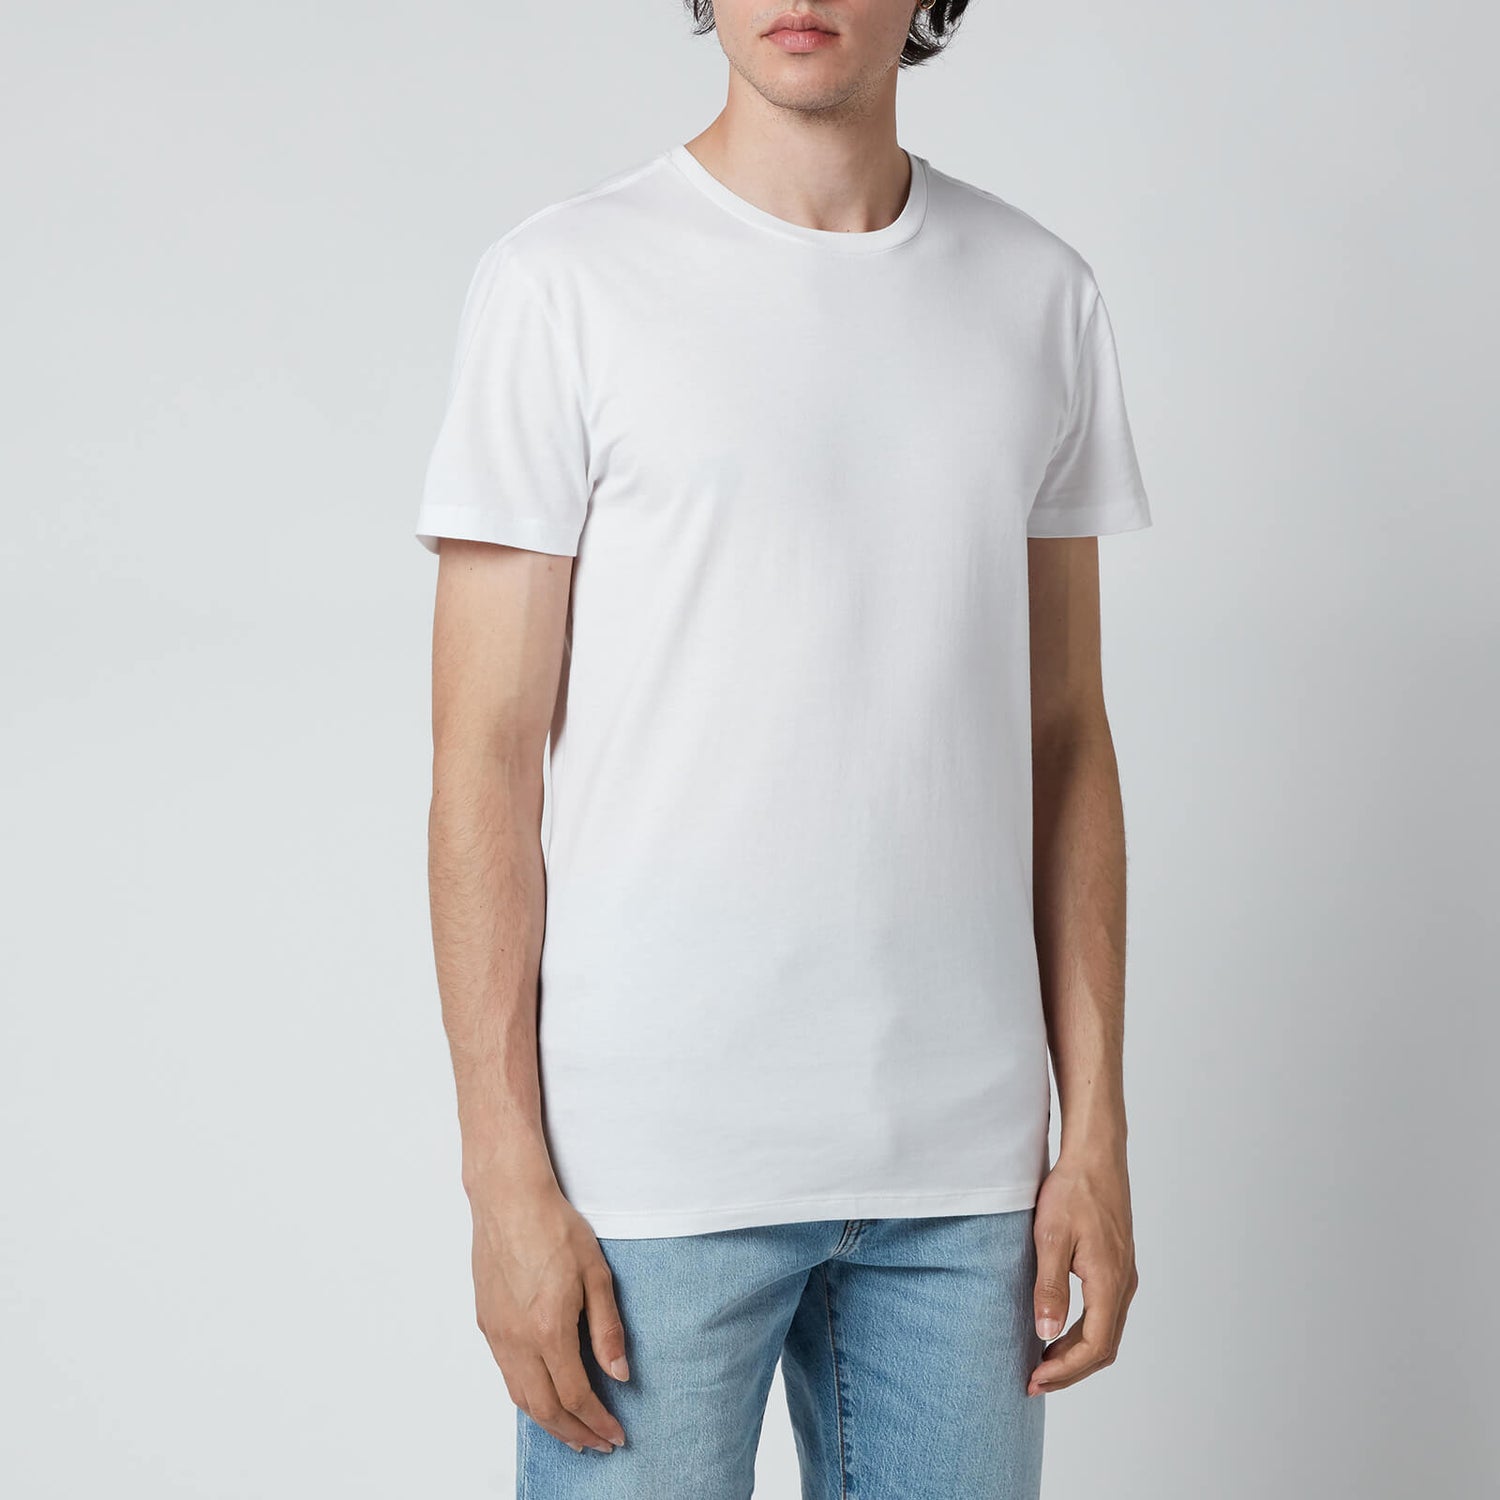 Polo Ralph Lauren Men's 3 Pack Crewneck T-Shirts - White/White/White - S